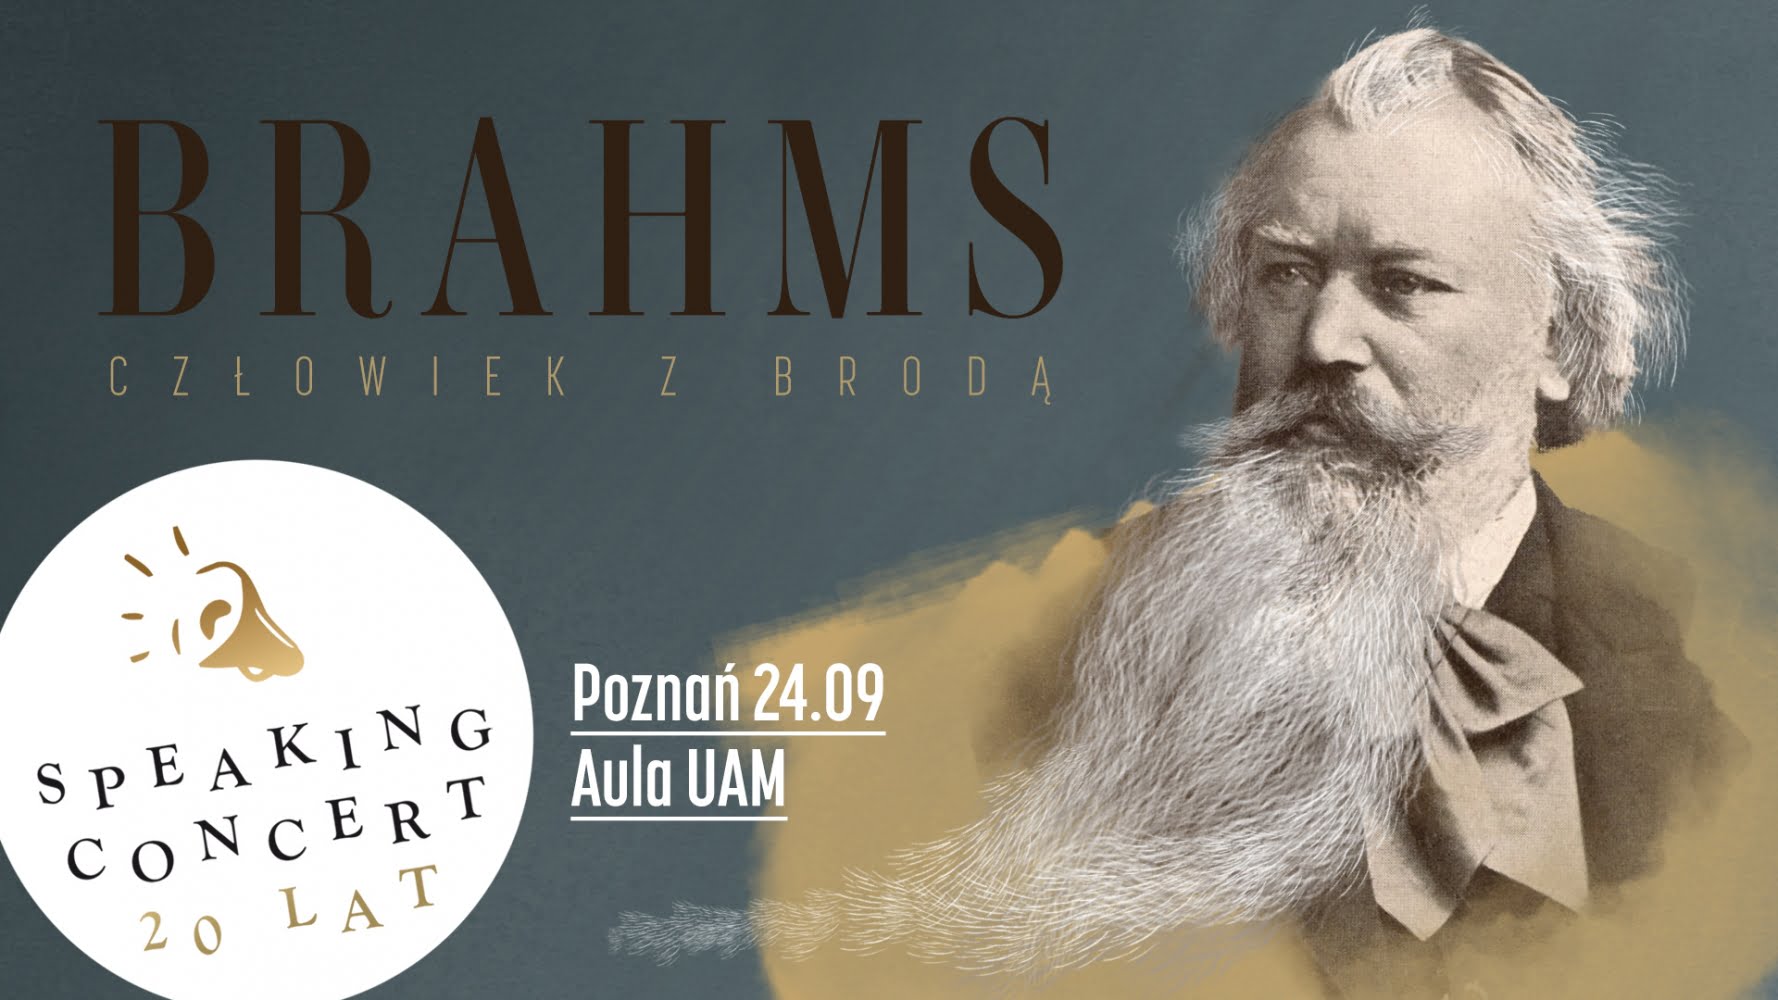 20 lat Speaking Concerts – BRAHMS. Człowiek z brodą. (485484)